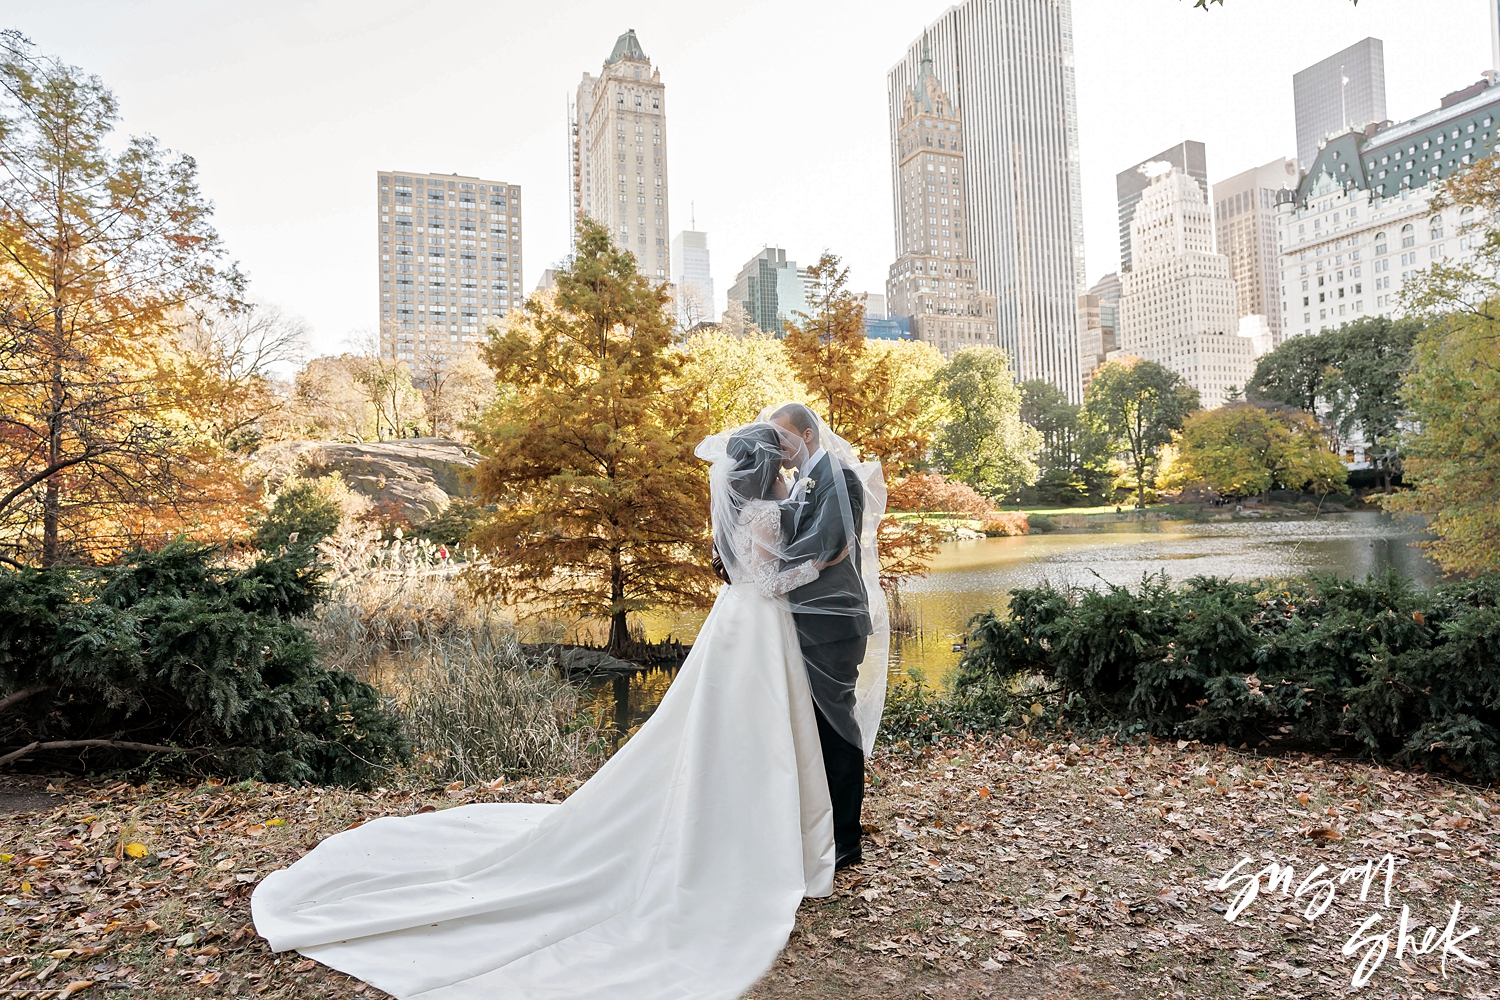 Central Park Wedding, central park elopement, central park wedding photos, central park wedding photography, susan shek photography, nyc wedding photographer